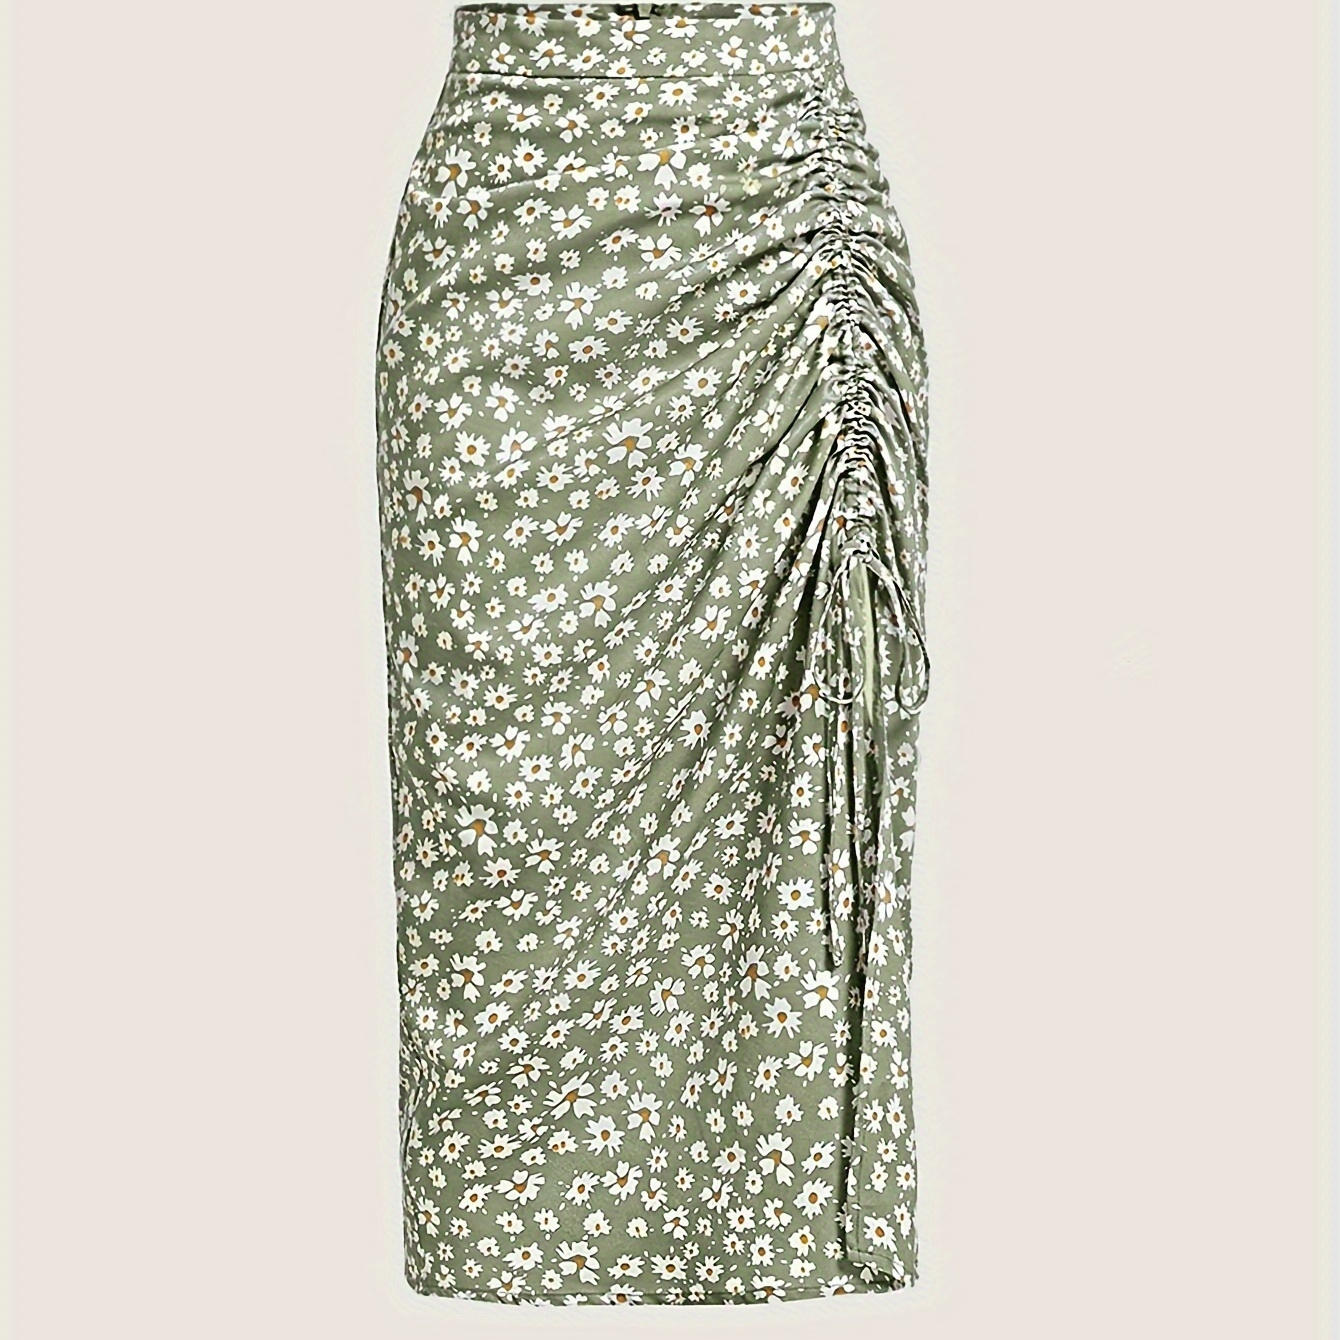 

Floral Print Drawstring Ruched Skirt, Elegant High Waist Midi Skirt For Spring & Summer, Women's Clothing